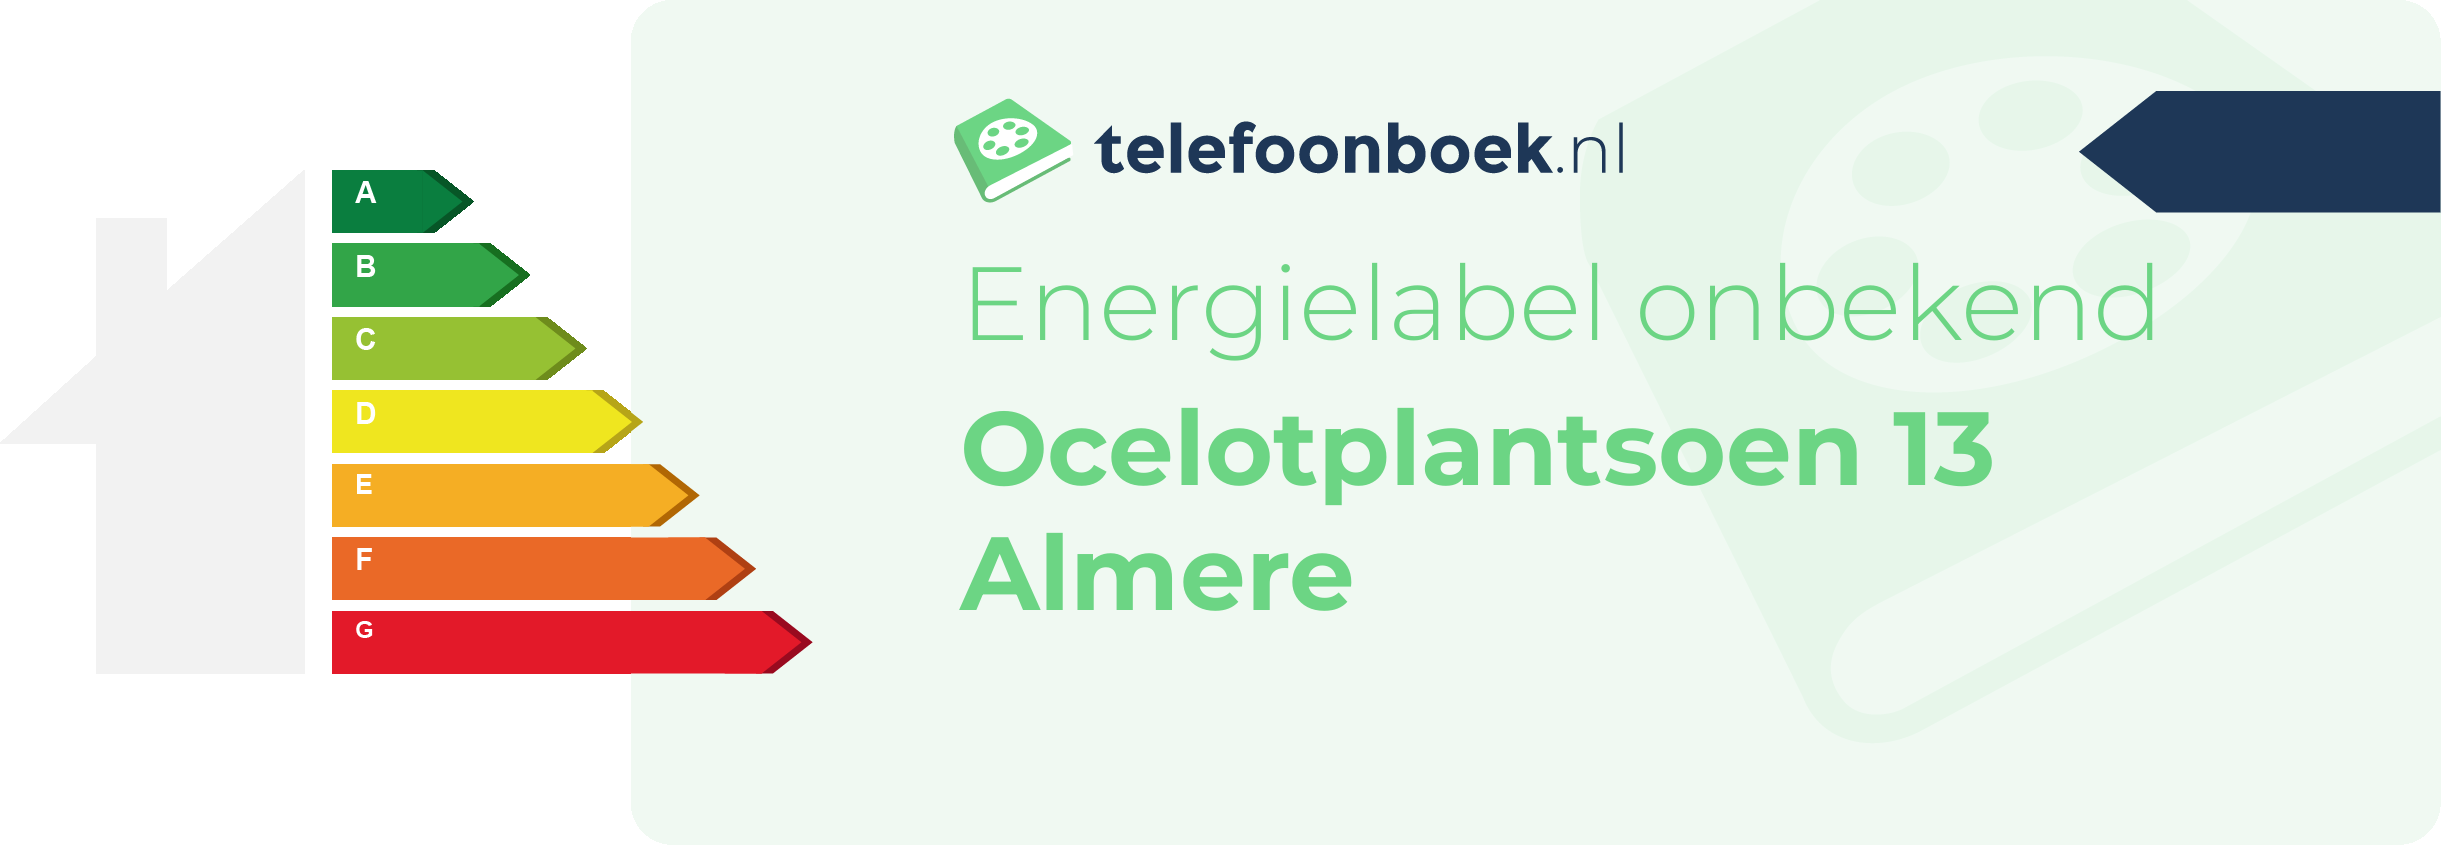 Energielabel Ocelotplantsoen 13 Almere